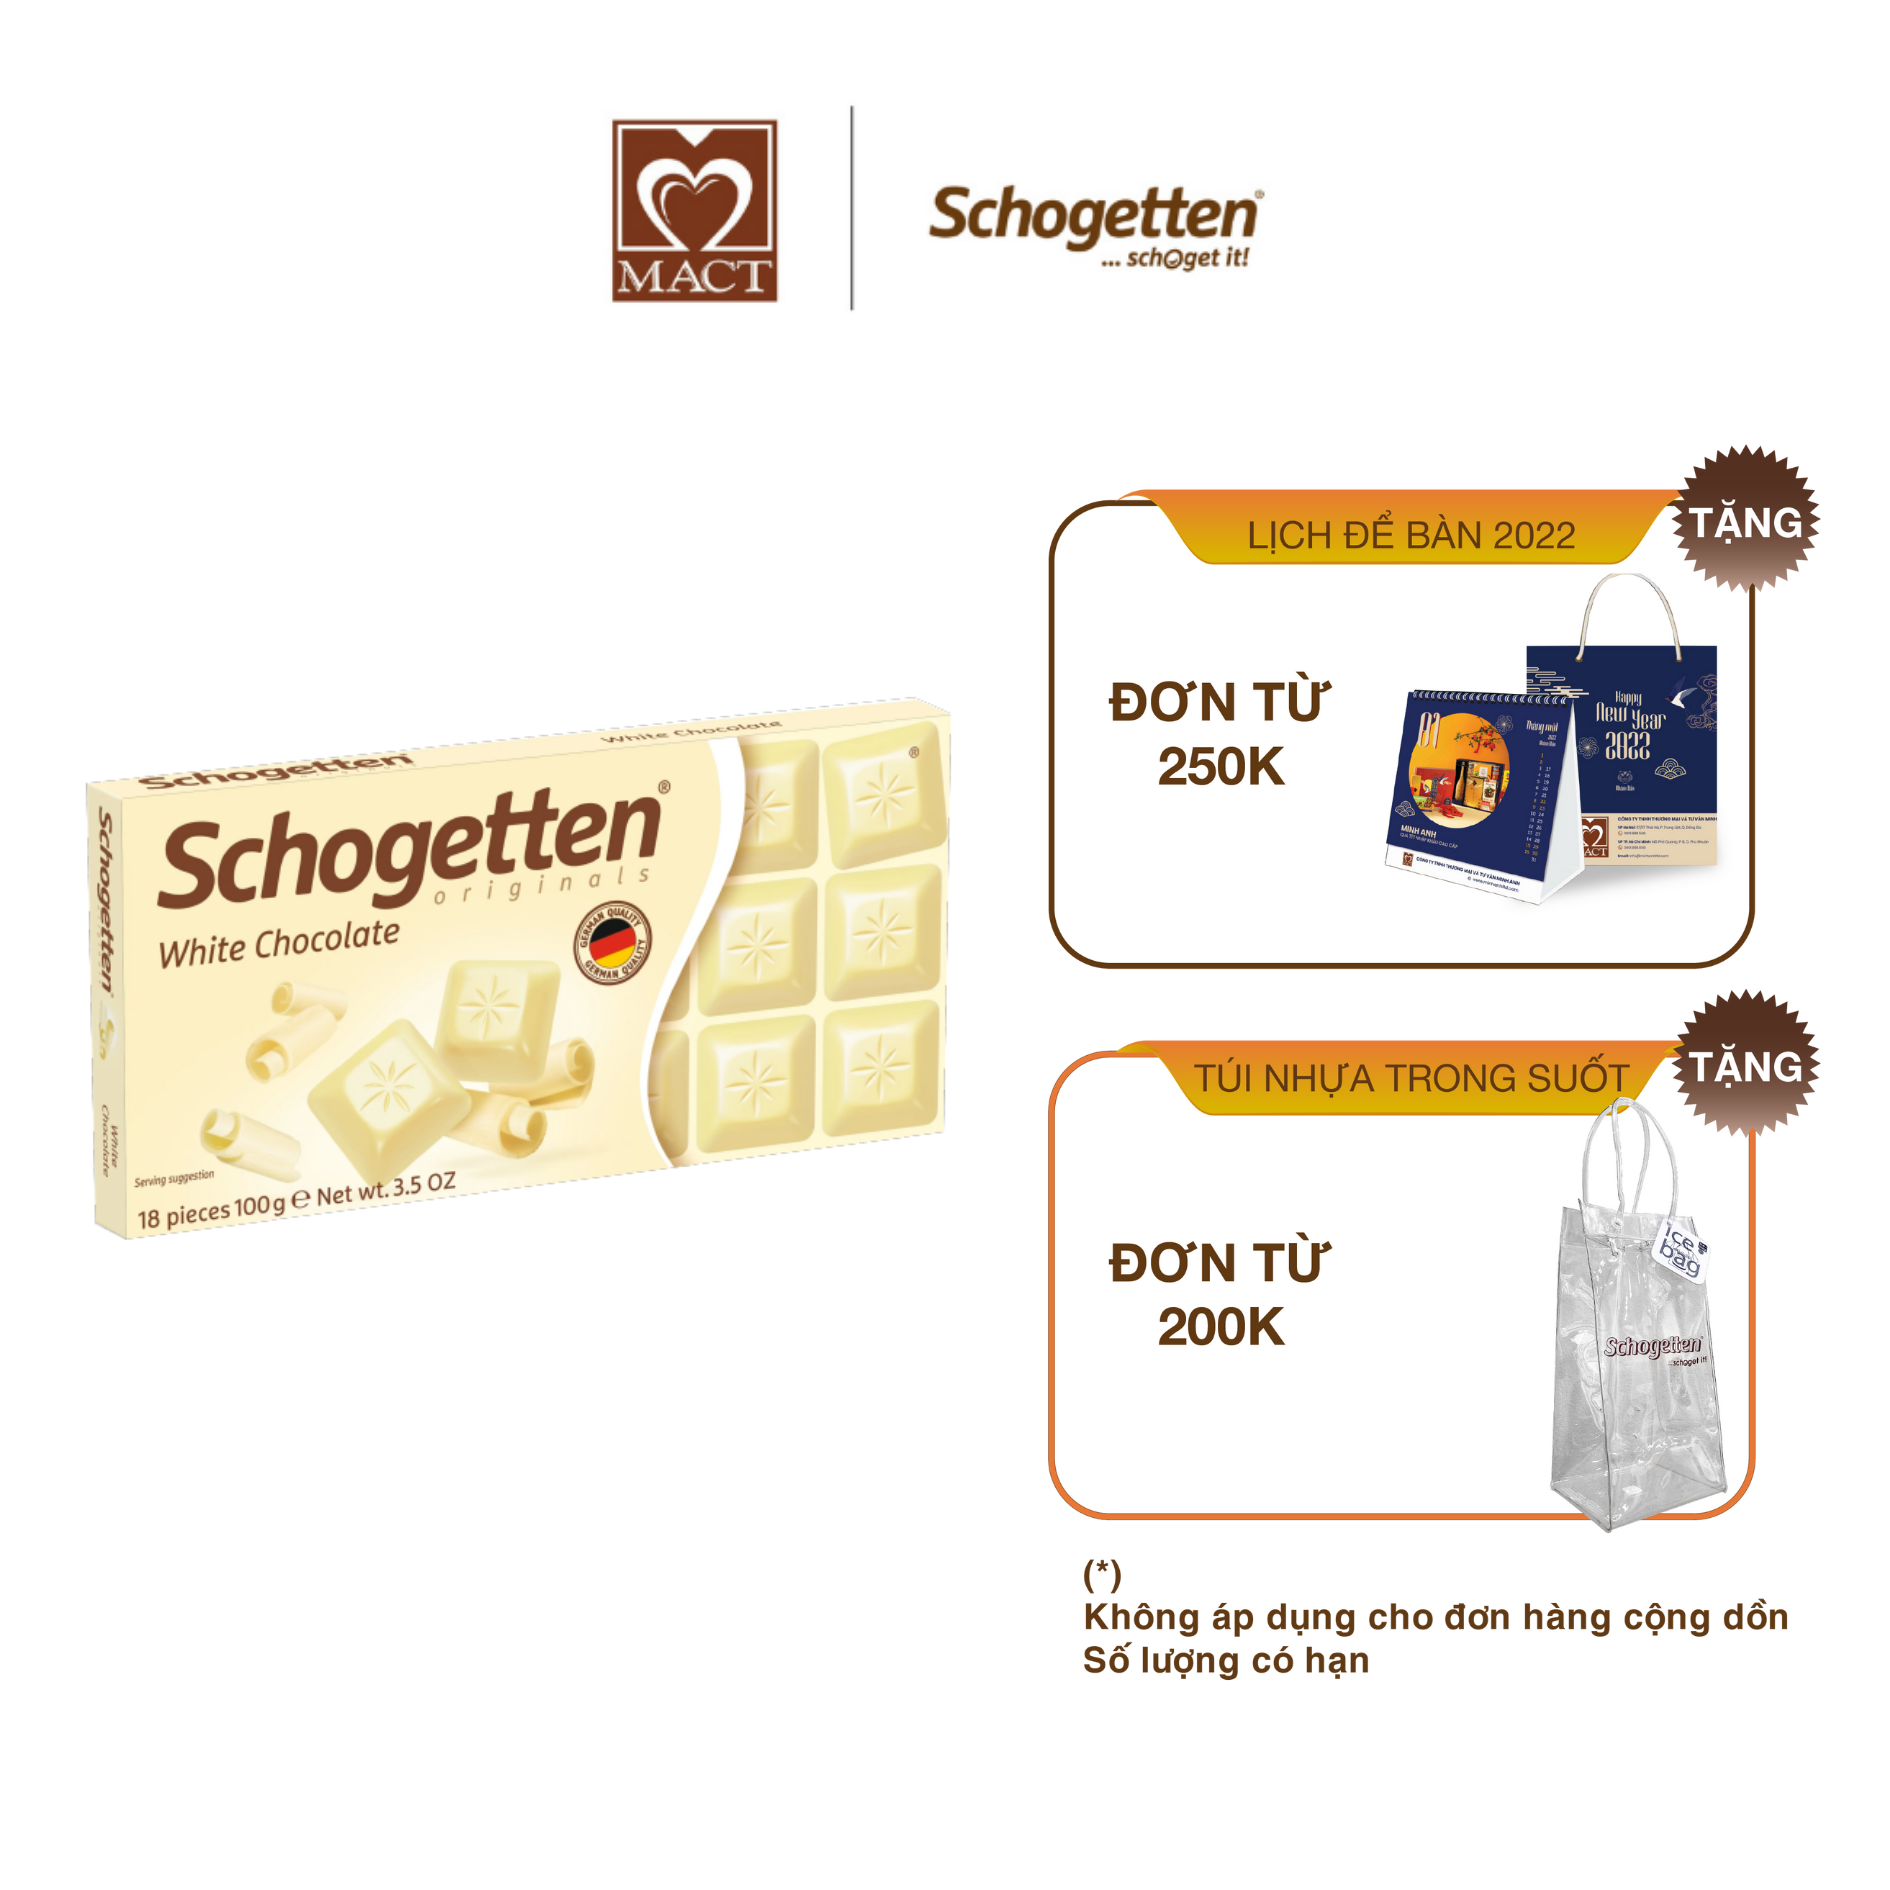 Sôcôla SCHOGETTEN - Vị trắng White Chocolate - thanh 100g gồm 18 viên rời